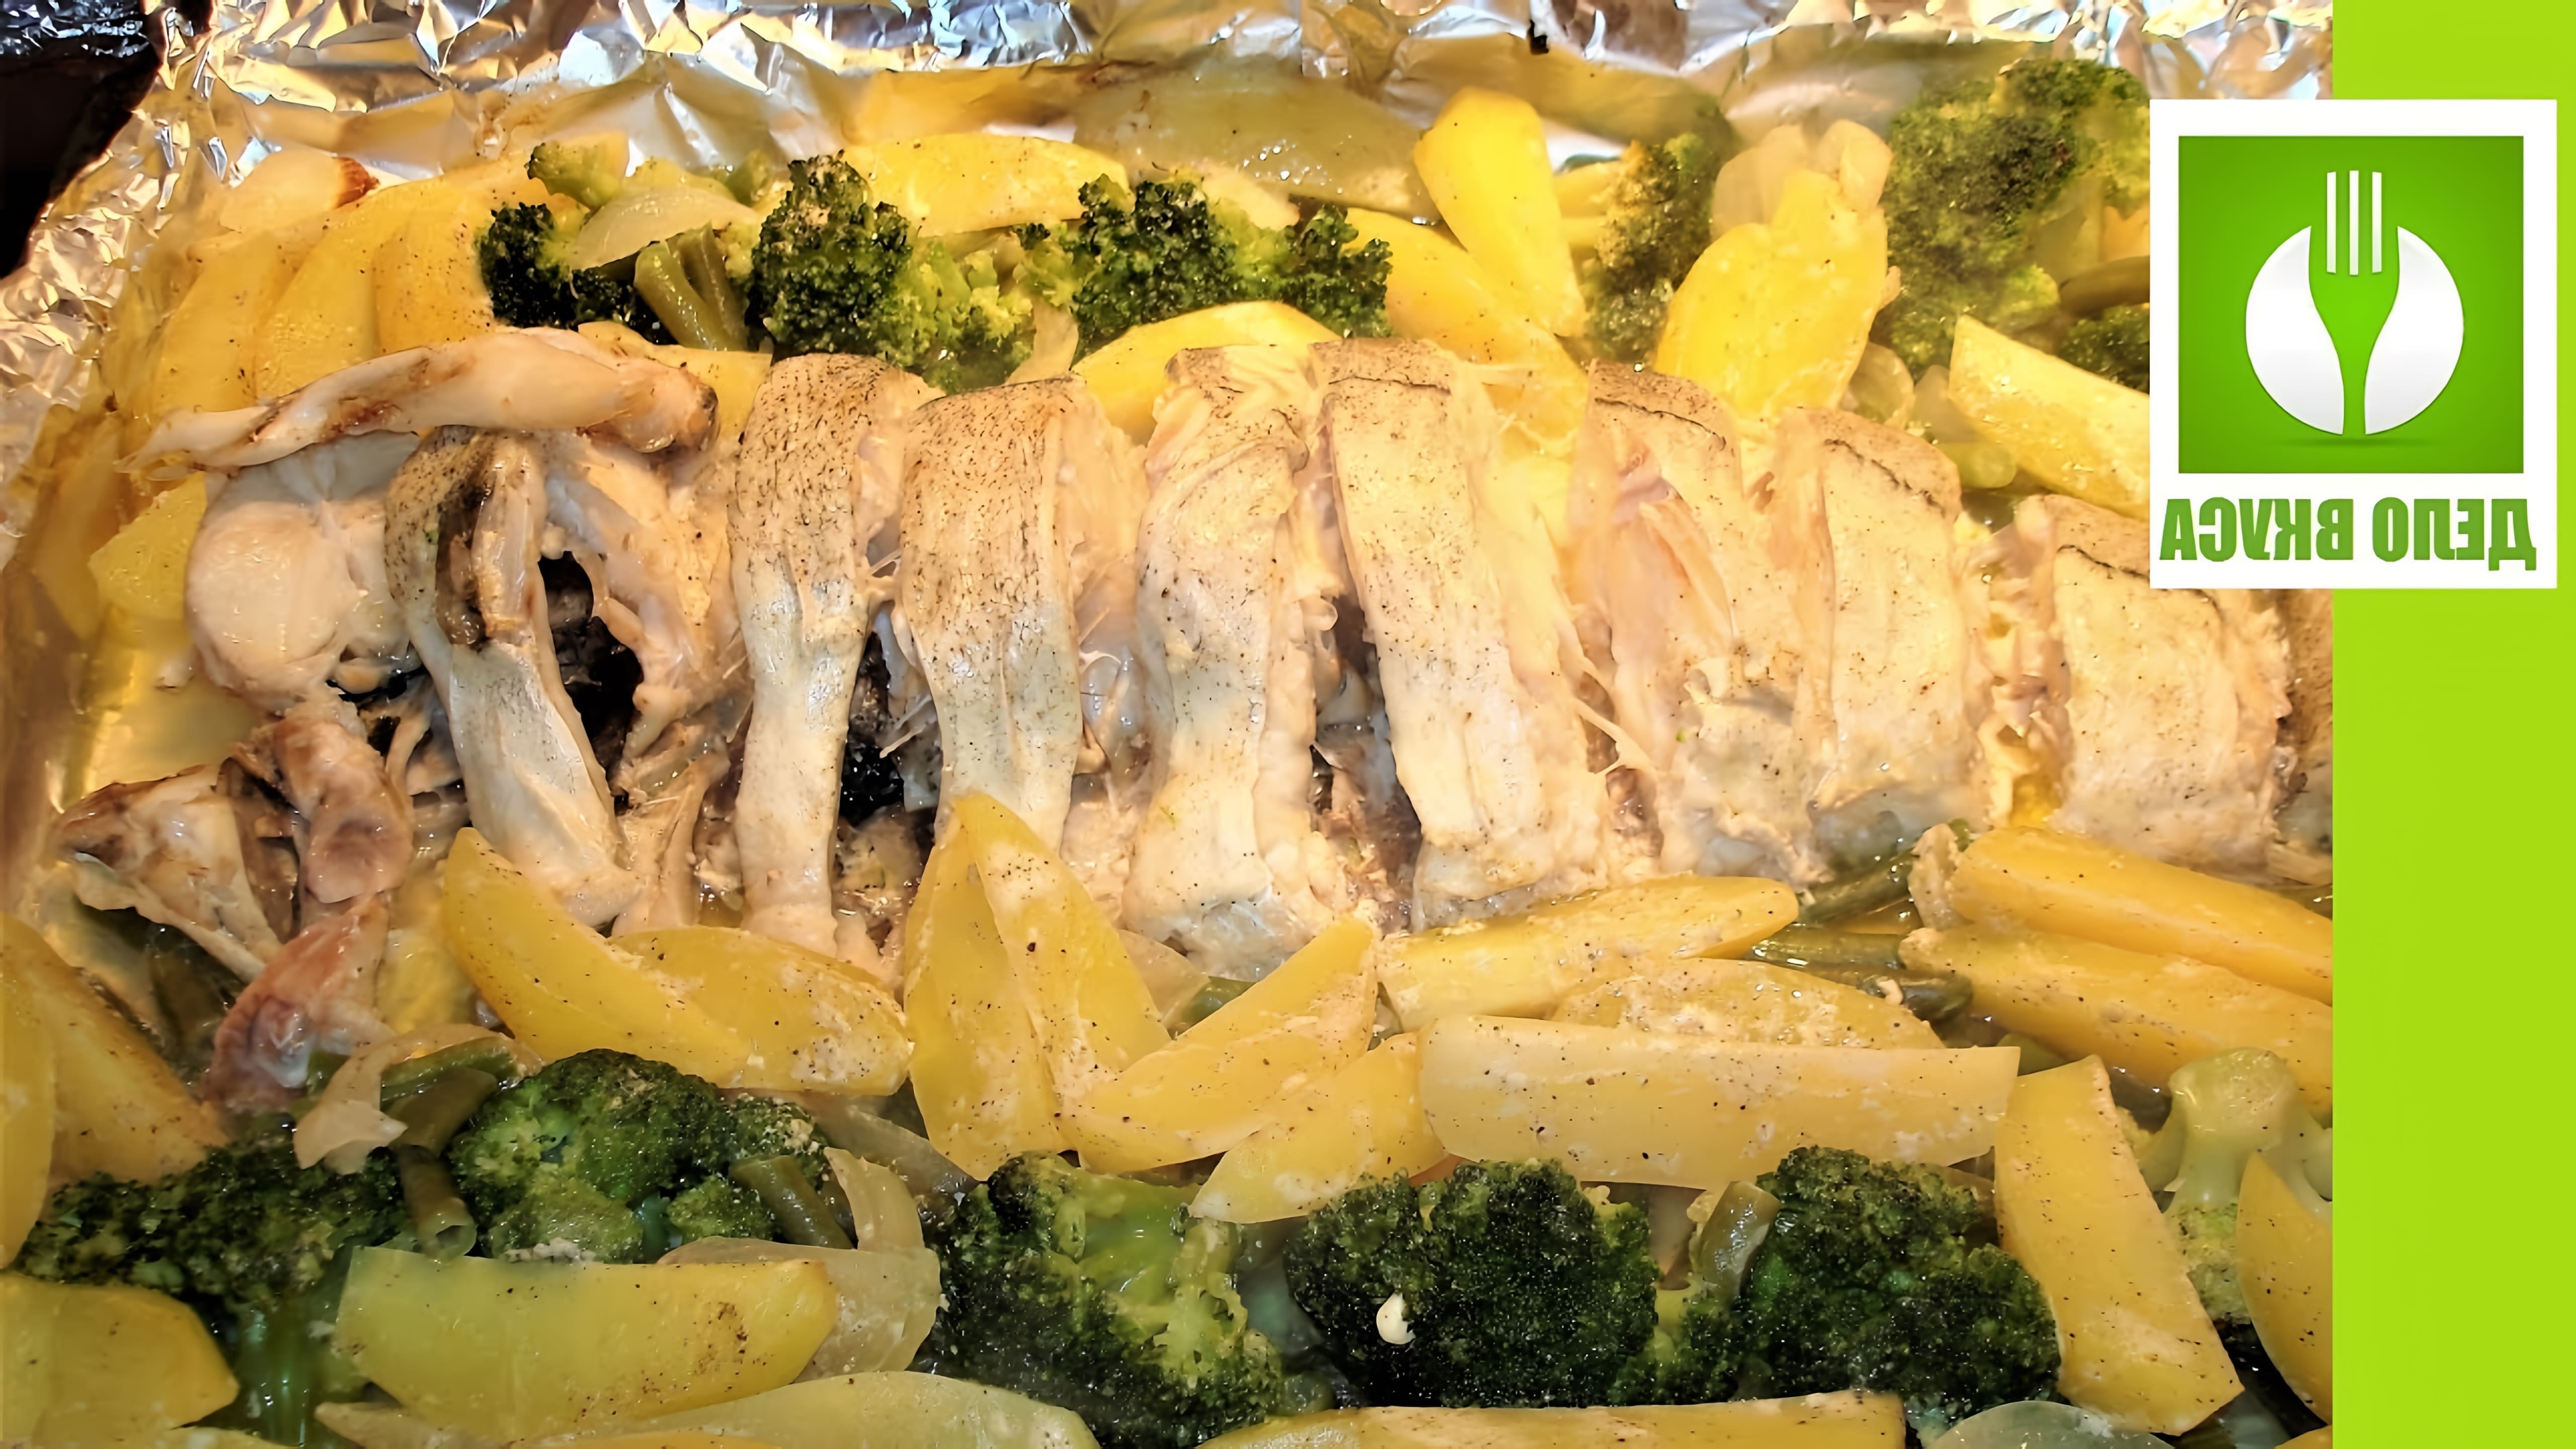 В этом видео демонстрируется процесс приготовления вкусного ужина из рыбы пикши, запеченной в фольге в духовке с овощами